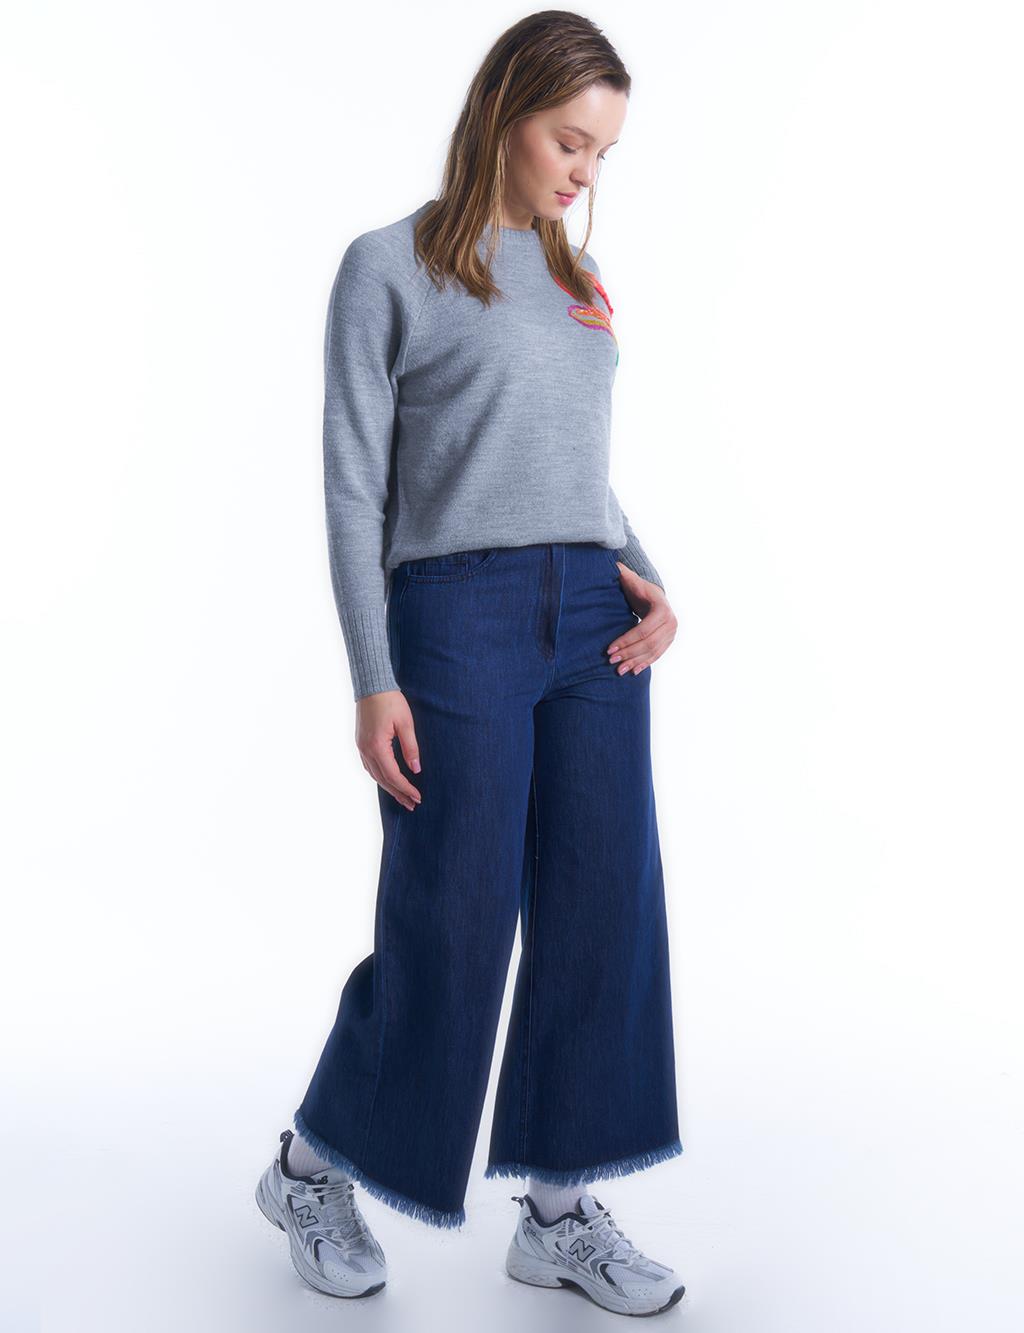 Джинсовые брюки с эластичной резинкой на талии индиго Kayra